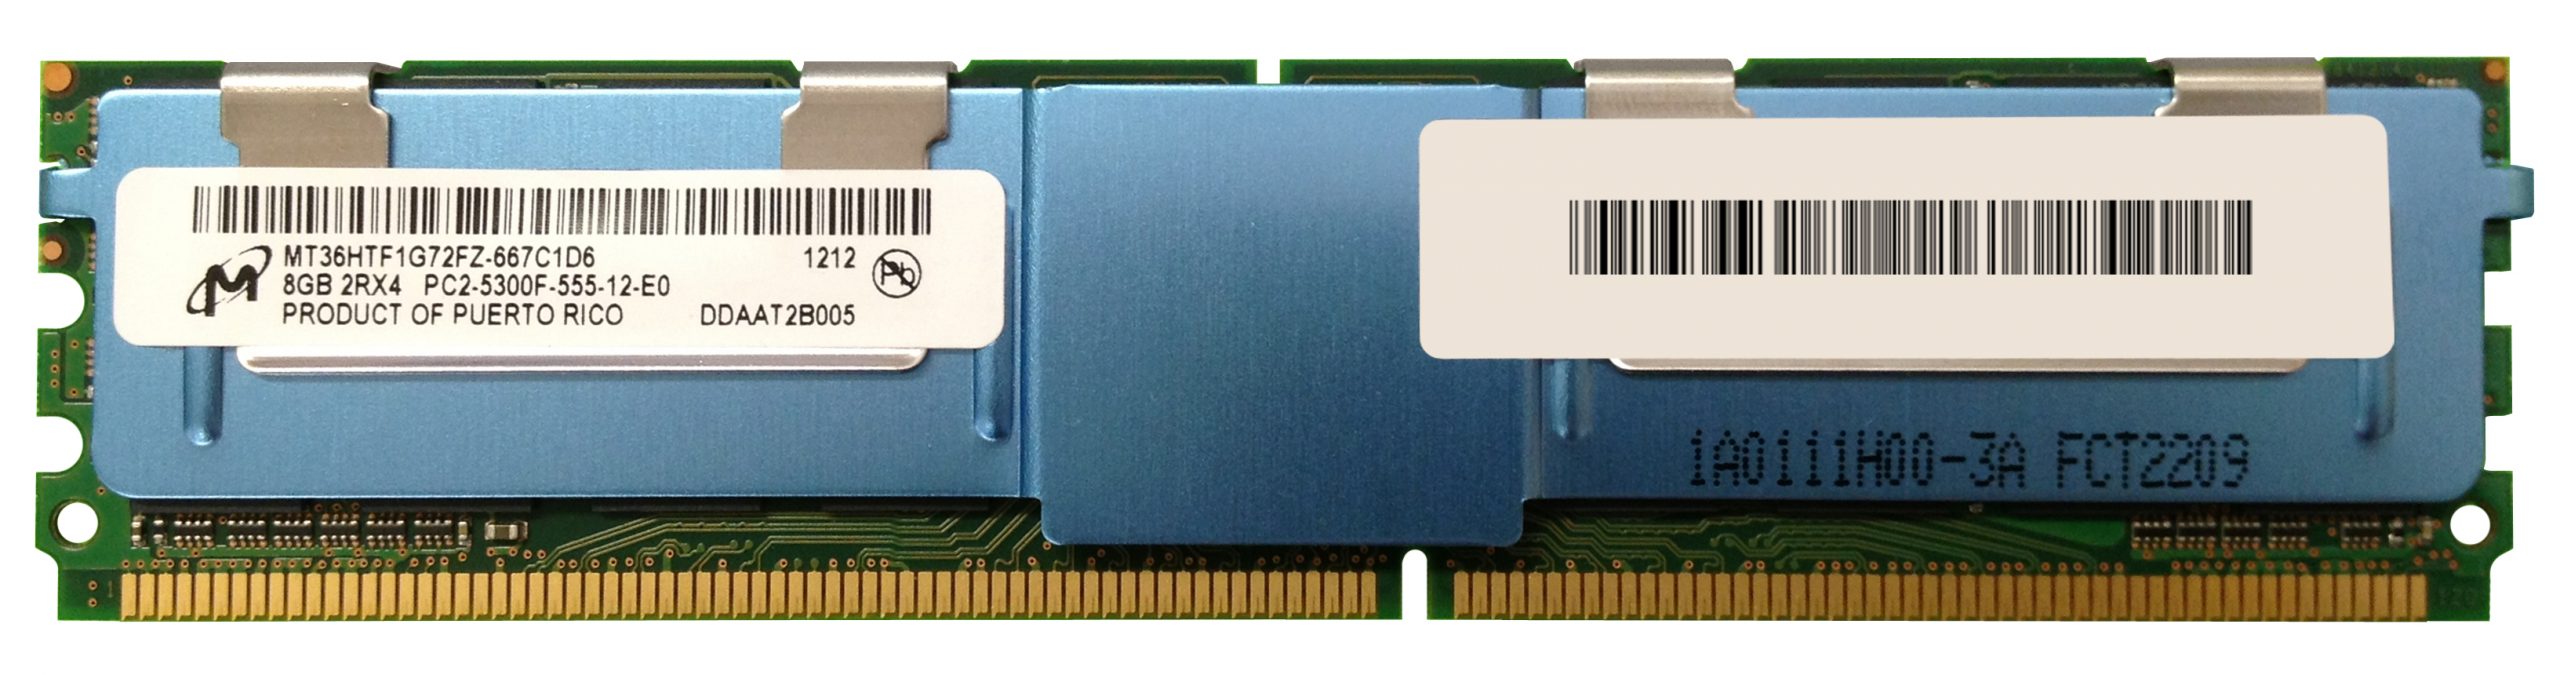 MICRON 8GB DDR2-667 FBDIMM 2Rx4 ecc PC2-5300F MT36HTF1G72FZ-667C1D6